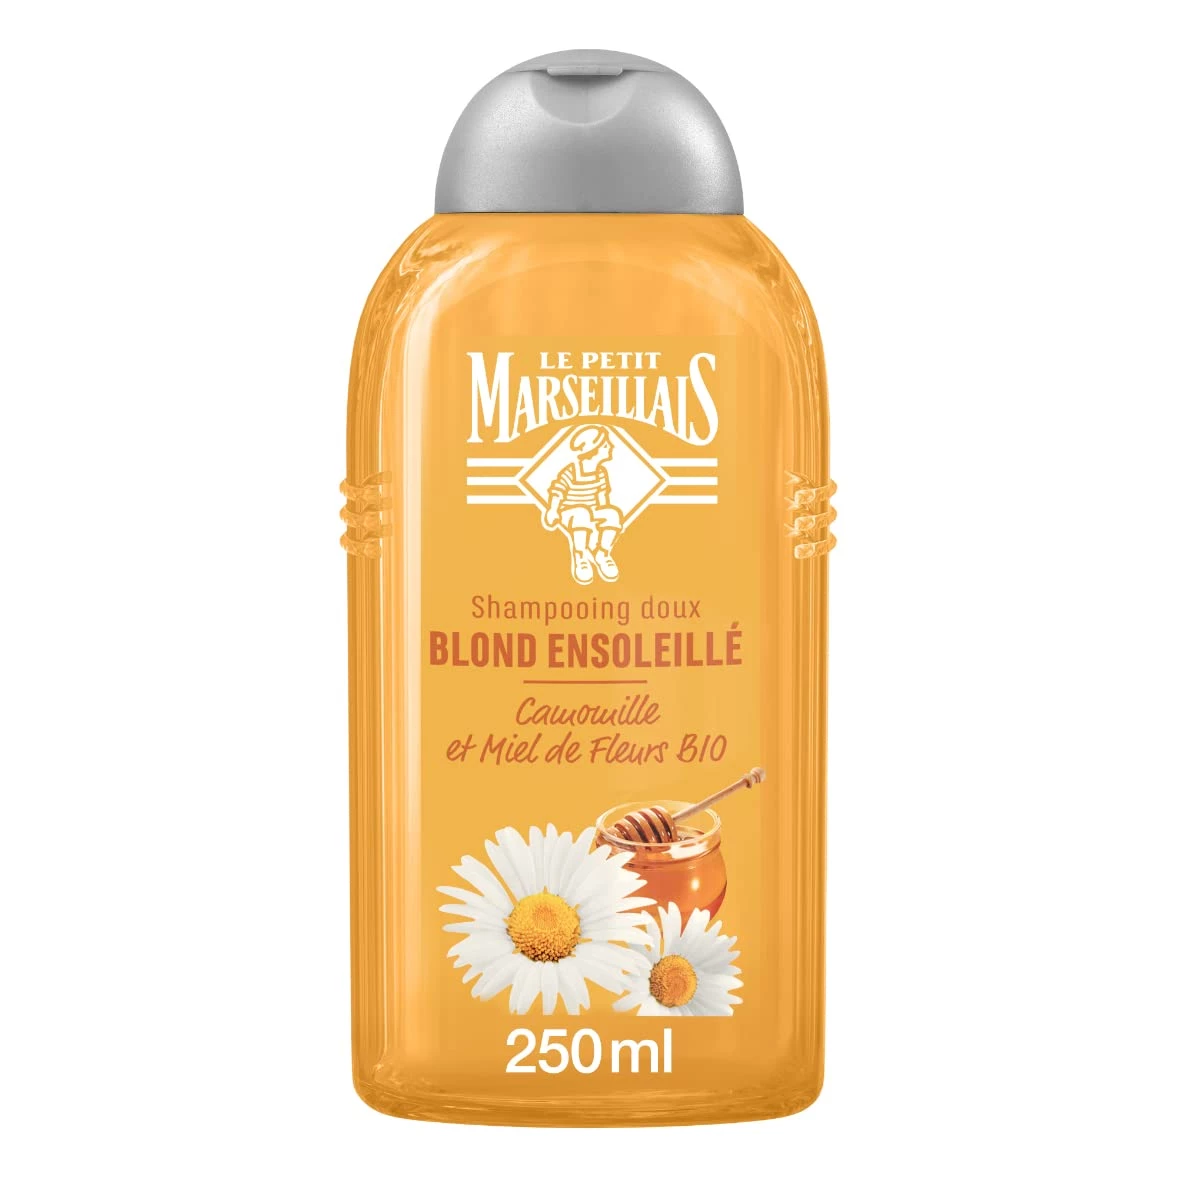 Shampoing Blond Ensoleille Camomille Et Miel De Fleurs Bio 250ml - Le Petit Marseillais